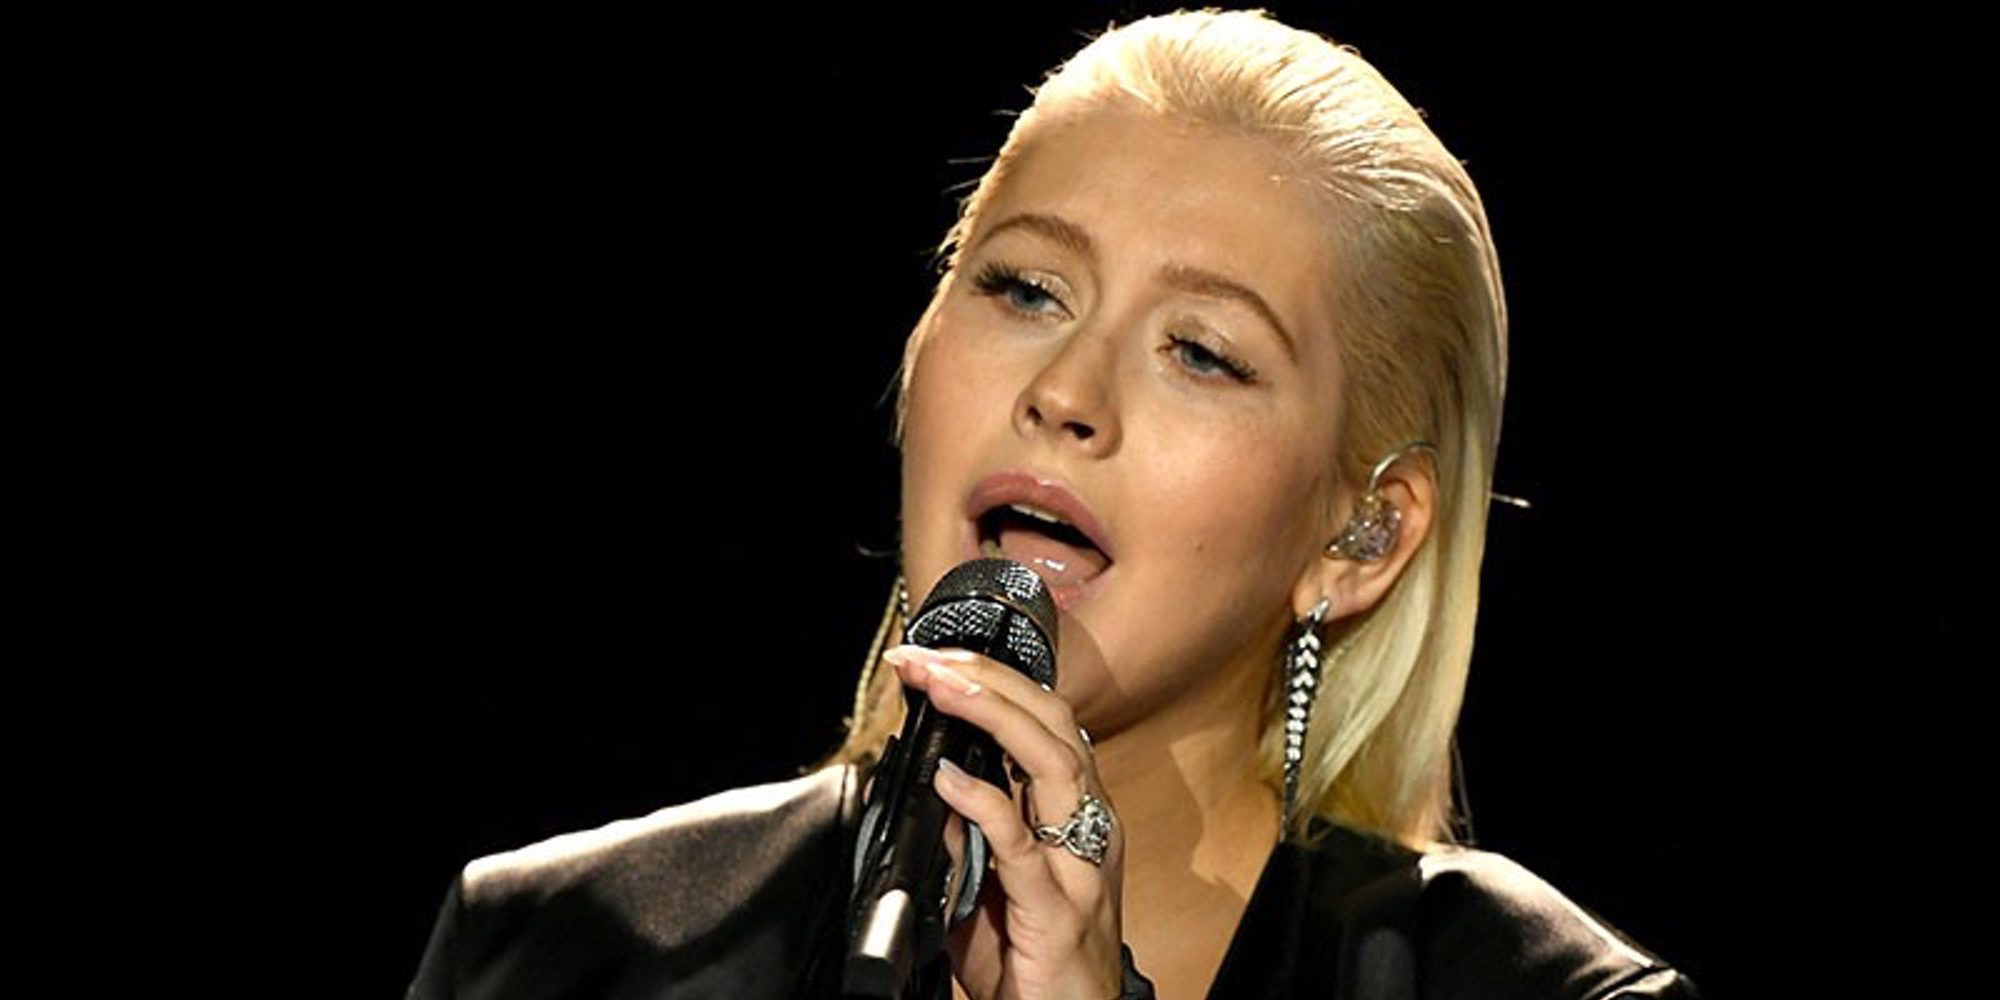 El gran cambio físico de Christina Aguilera en los AMAs 2017: ¿Maquillaje o retoque?